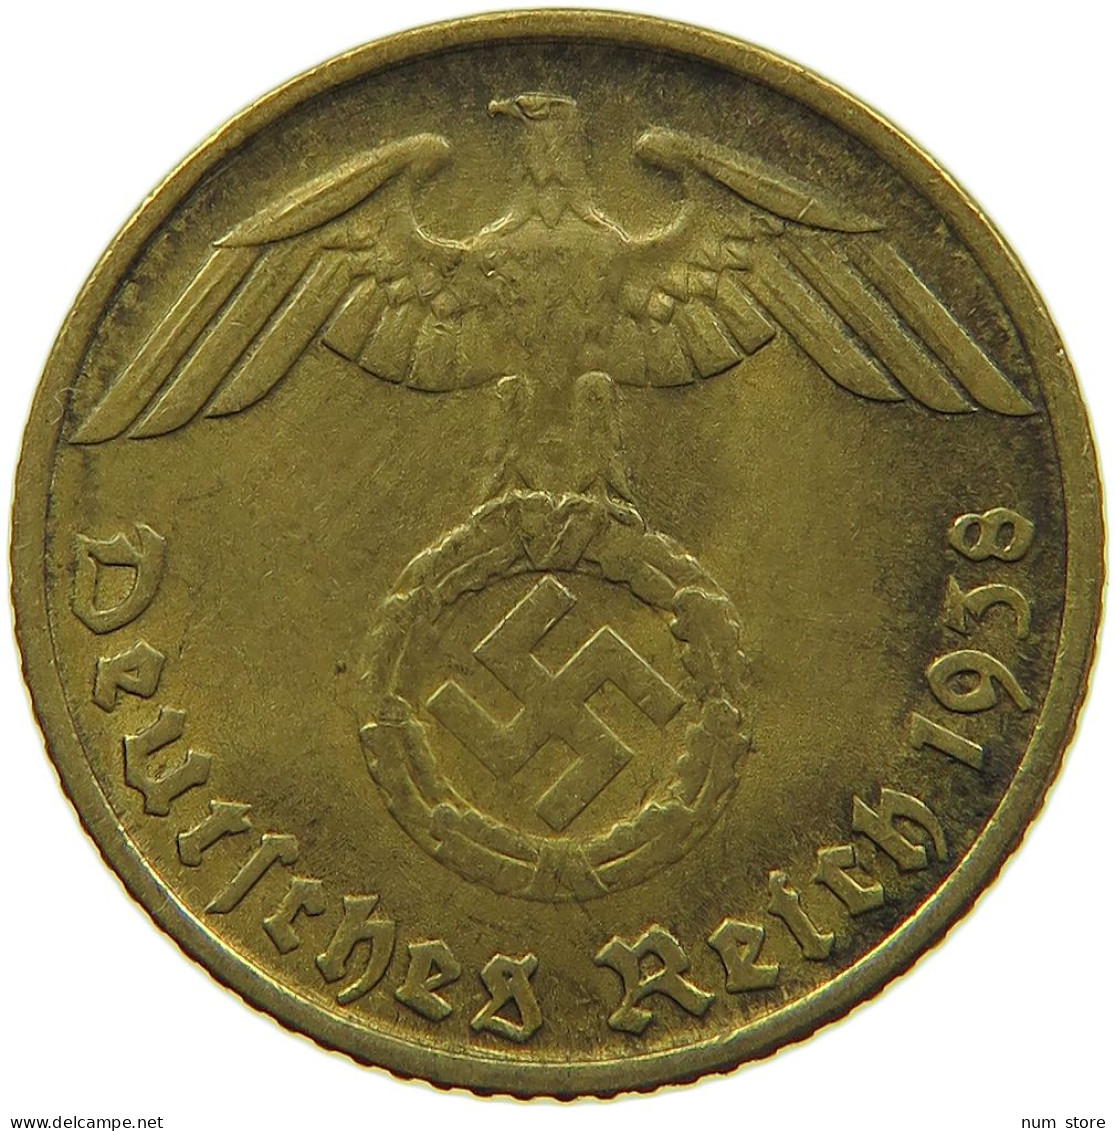 GERMANY 5 REICHSPFENNIG 1938 D #s091 0771 - 5 Reichspfennig